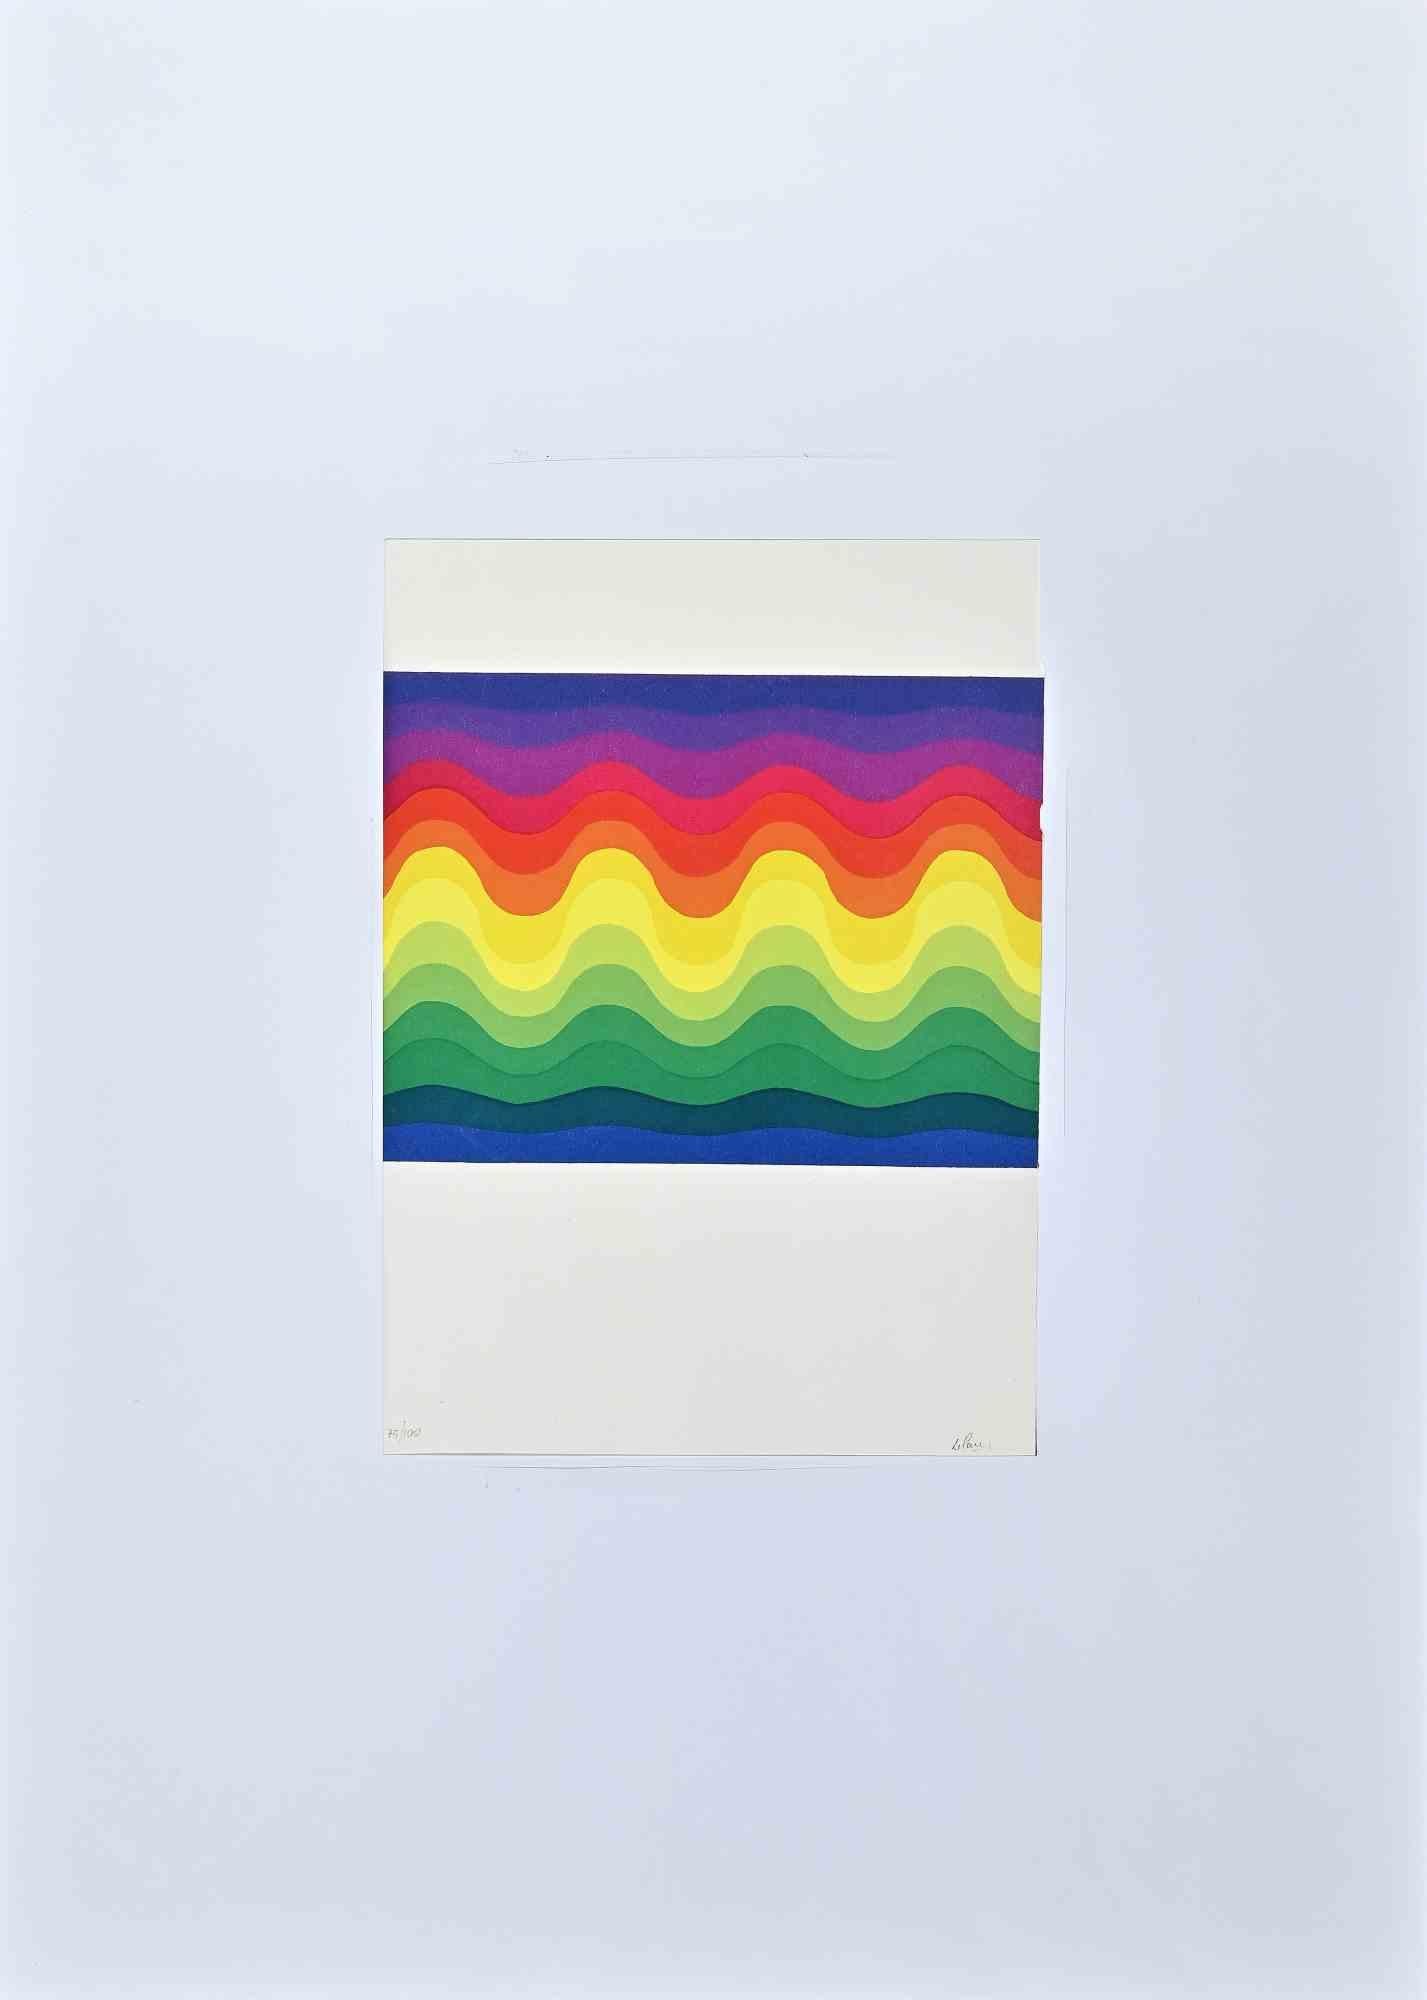 Colored waves ist eine farbige Serigraphie, die 1977 von dem argentinischen Künstler  Julio Le Parc .

Handsigniert  mit Bleistift des Künstlers rechts unten. Links unten nummeriert.

Ausgabe V/XVI.

Rechts unten der Trockenstempel des Herausgebers